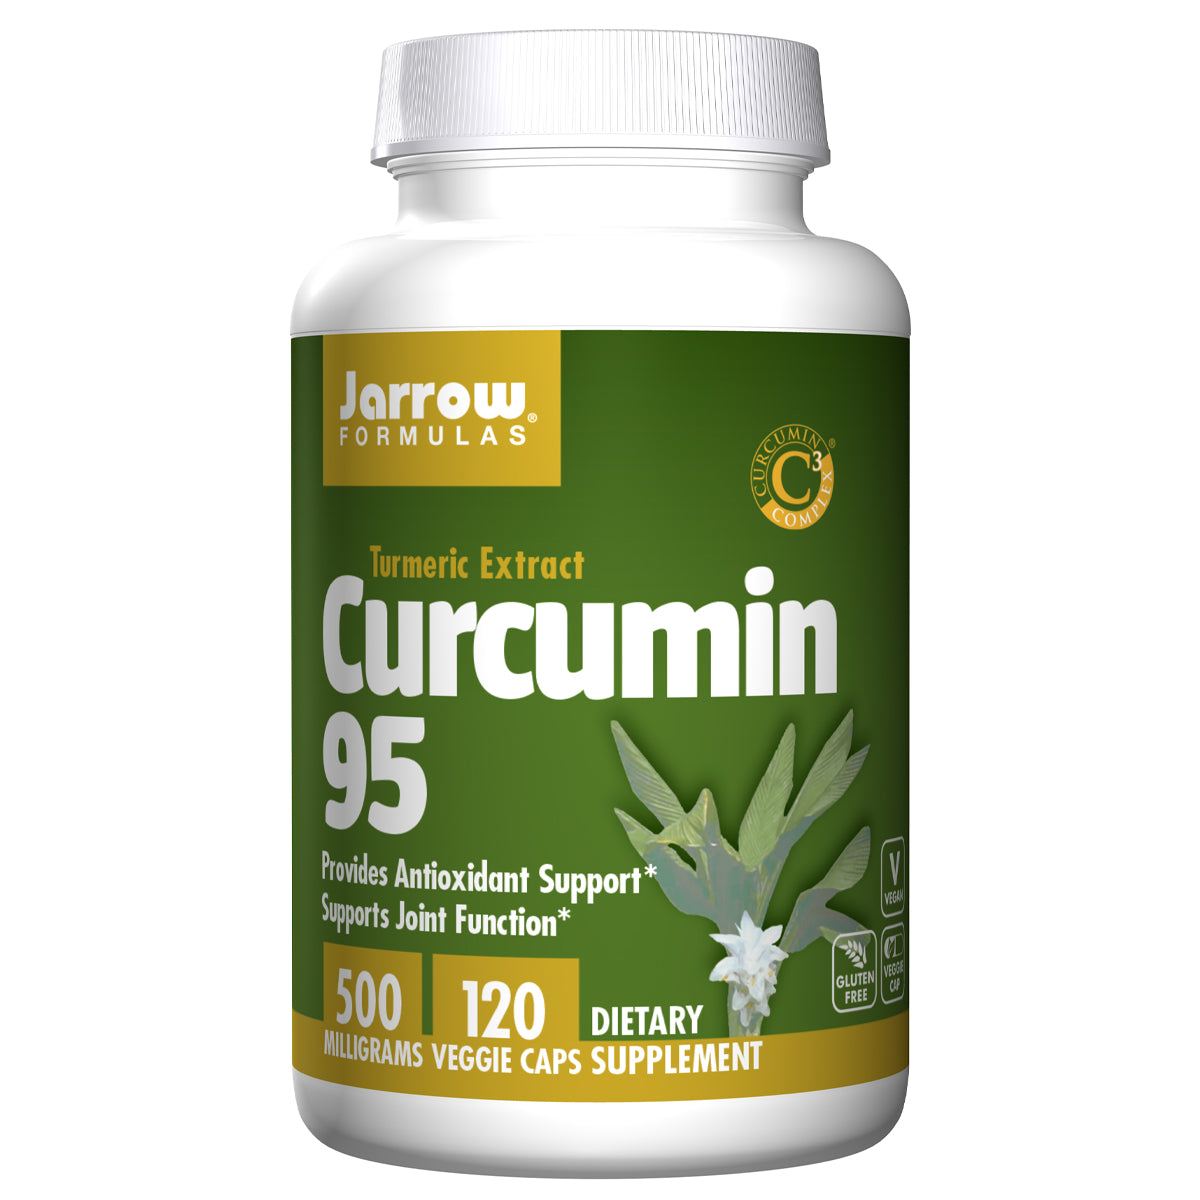 Curcumin-95 - Jarrow Formulas